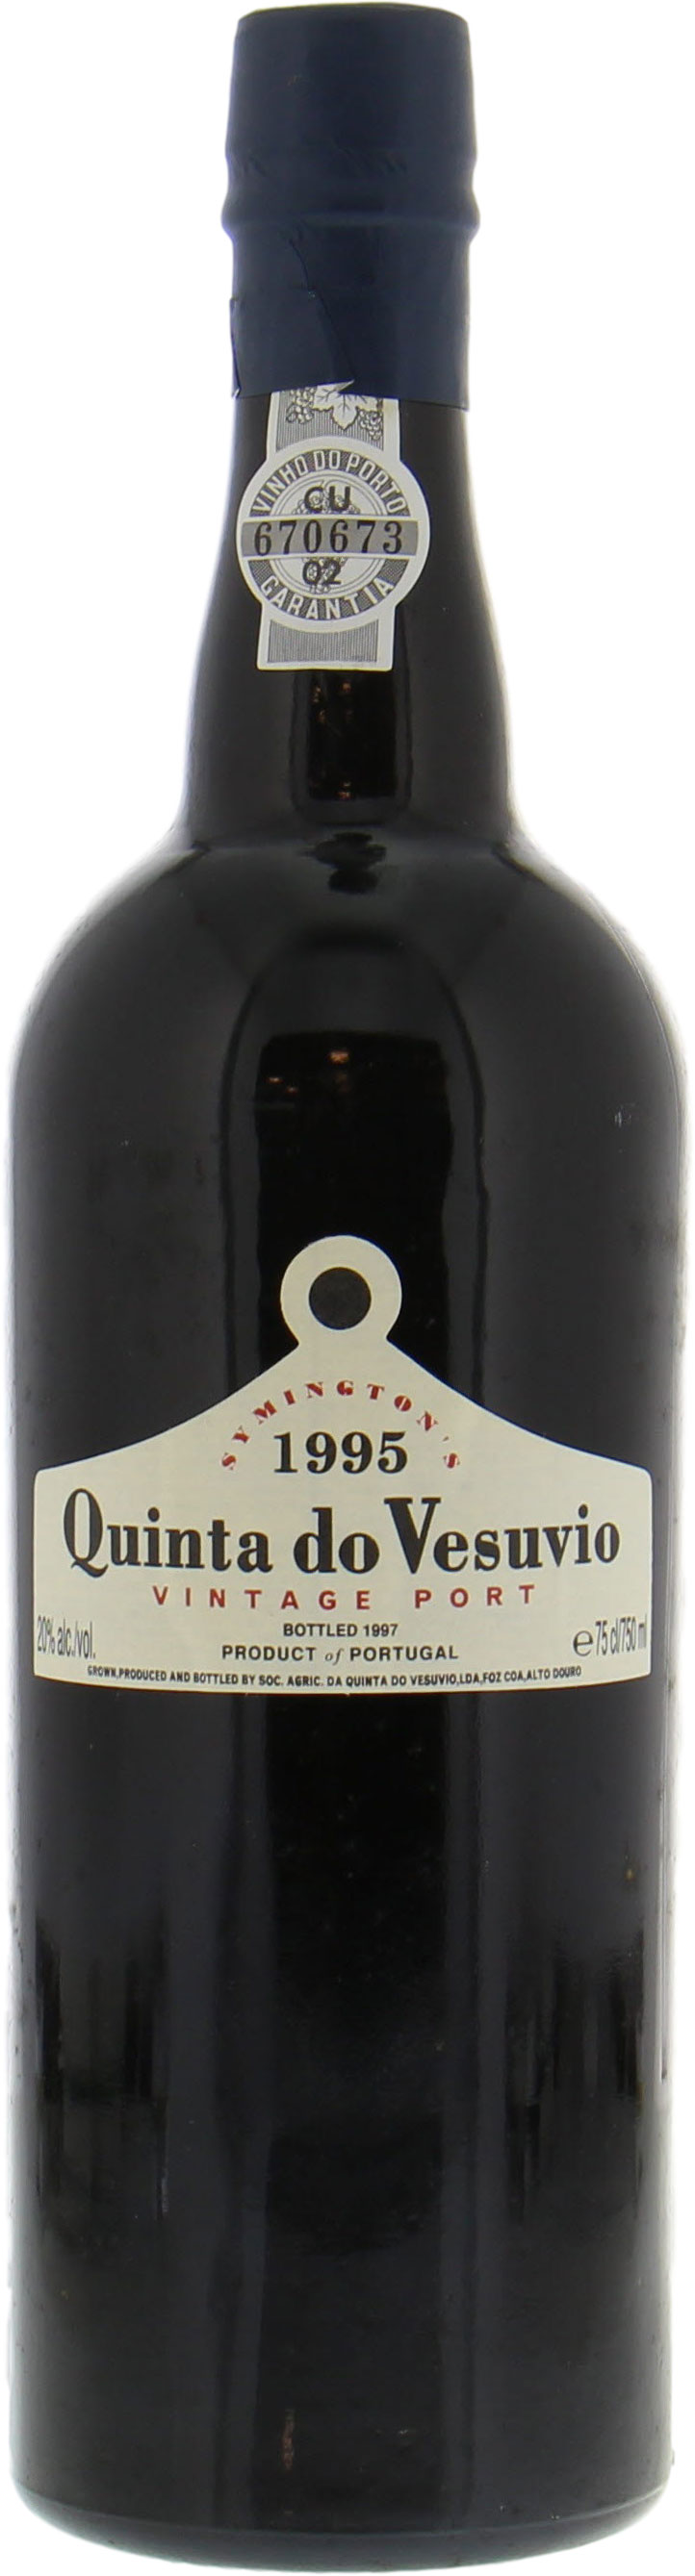 Quinta do Vesuvio - Vintage Port 1995 Perfect